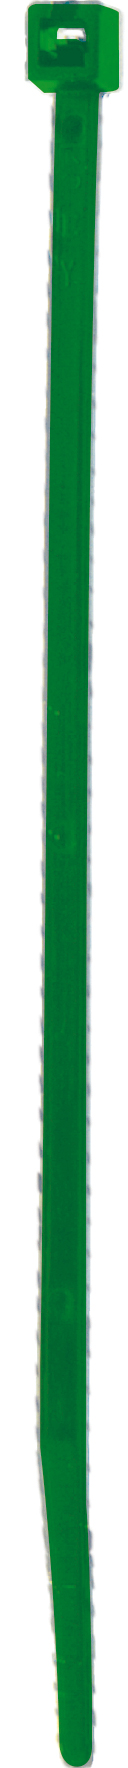 Cod. 36300Z362030C - FS Fascetta per cablaggio in nylon - Verde